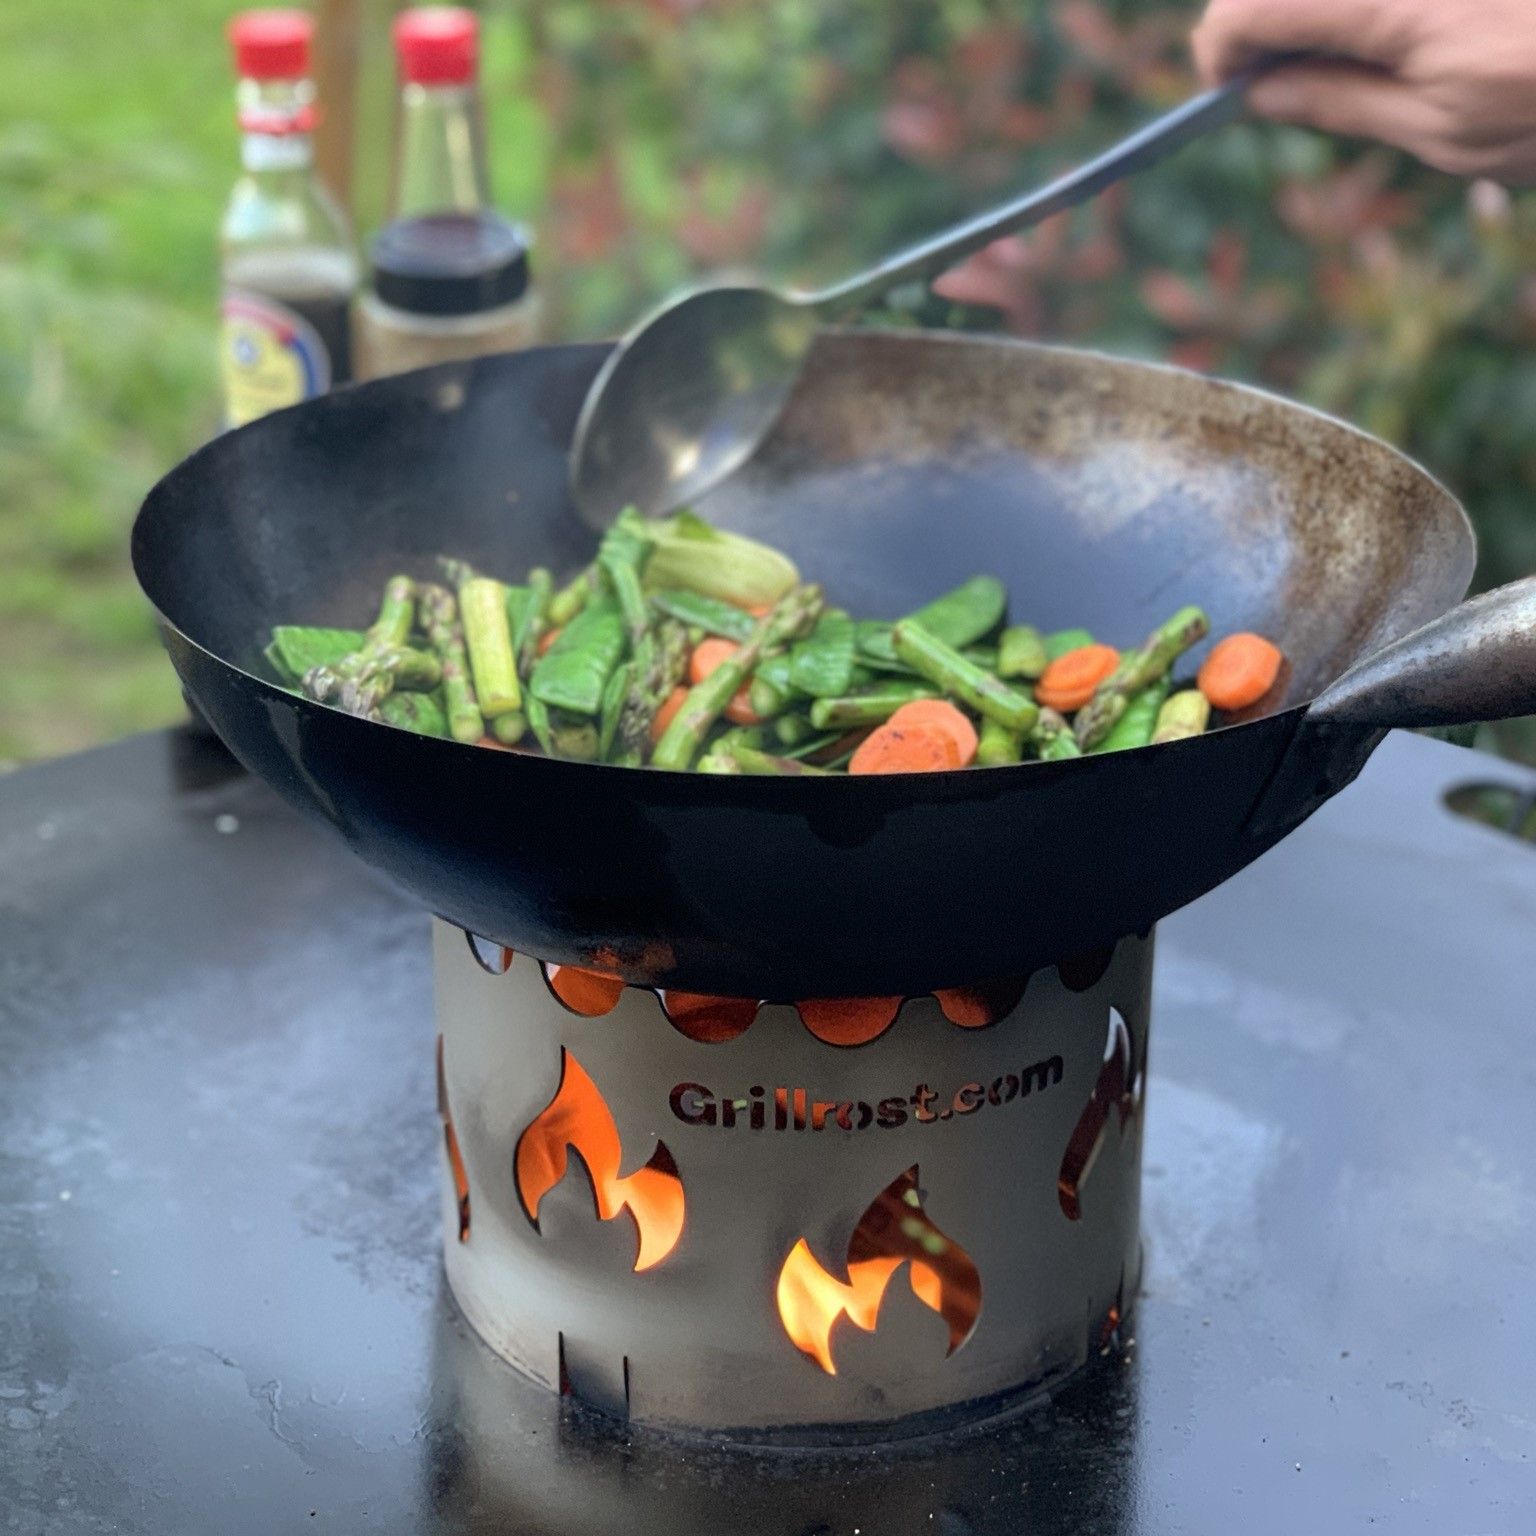 Rehausse pour wok en acier inoxydable pour plaques de cuisson pour griller au wok et protéger contre l'affaissement